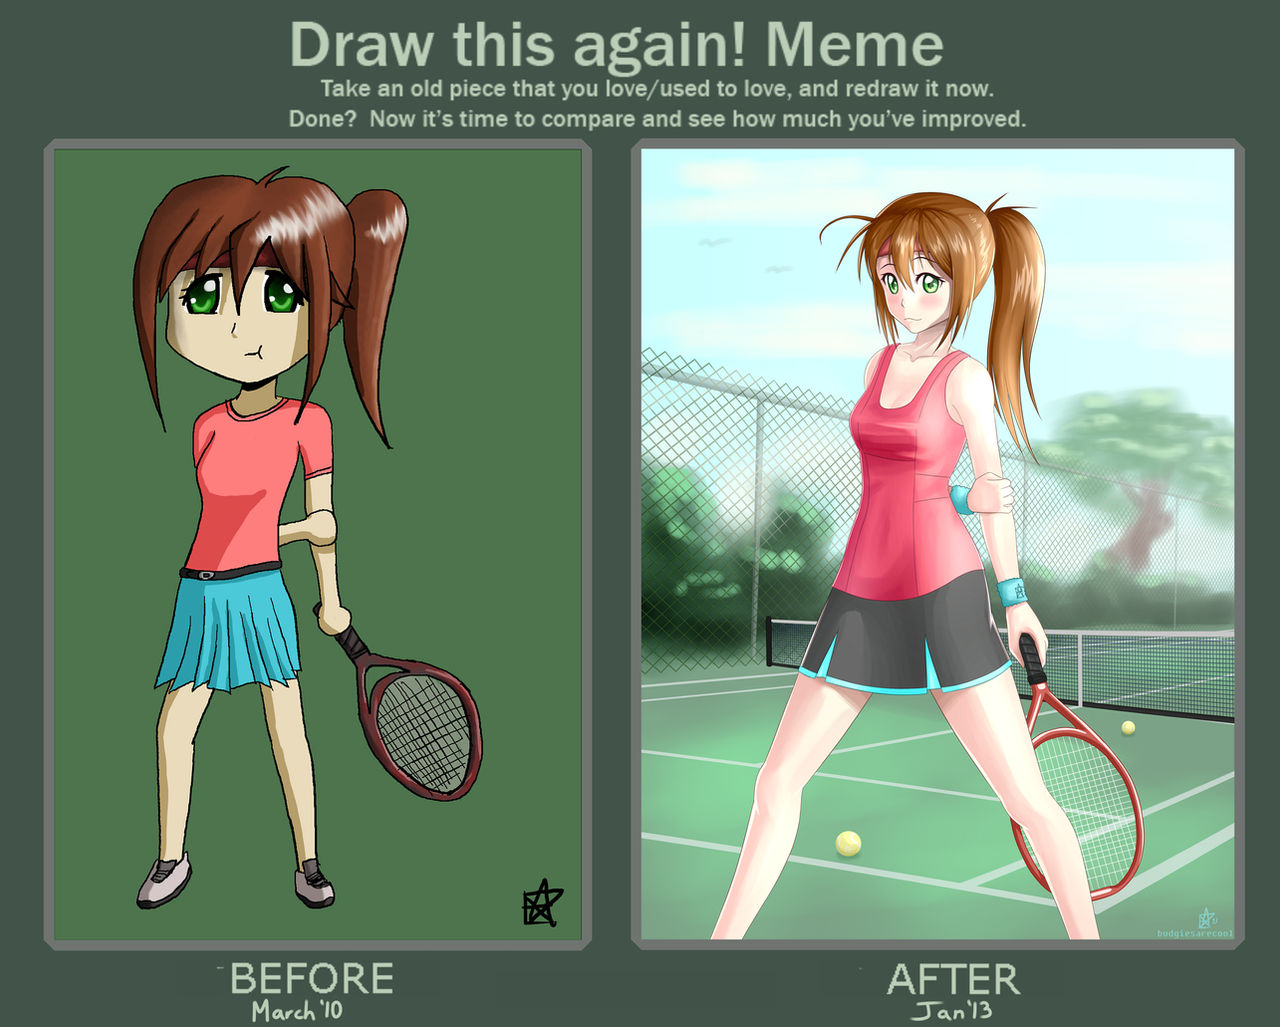 Drawn Again 6 (Tennis Girl)